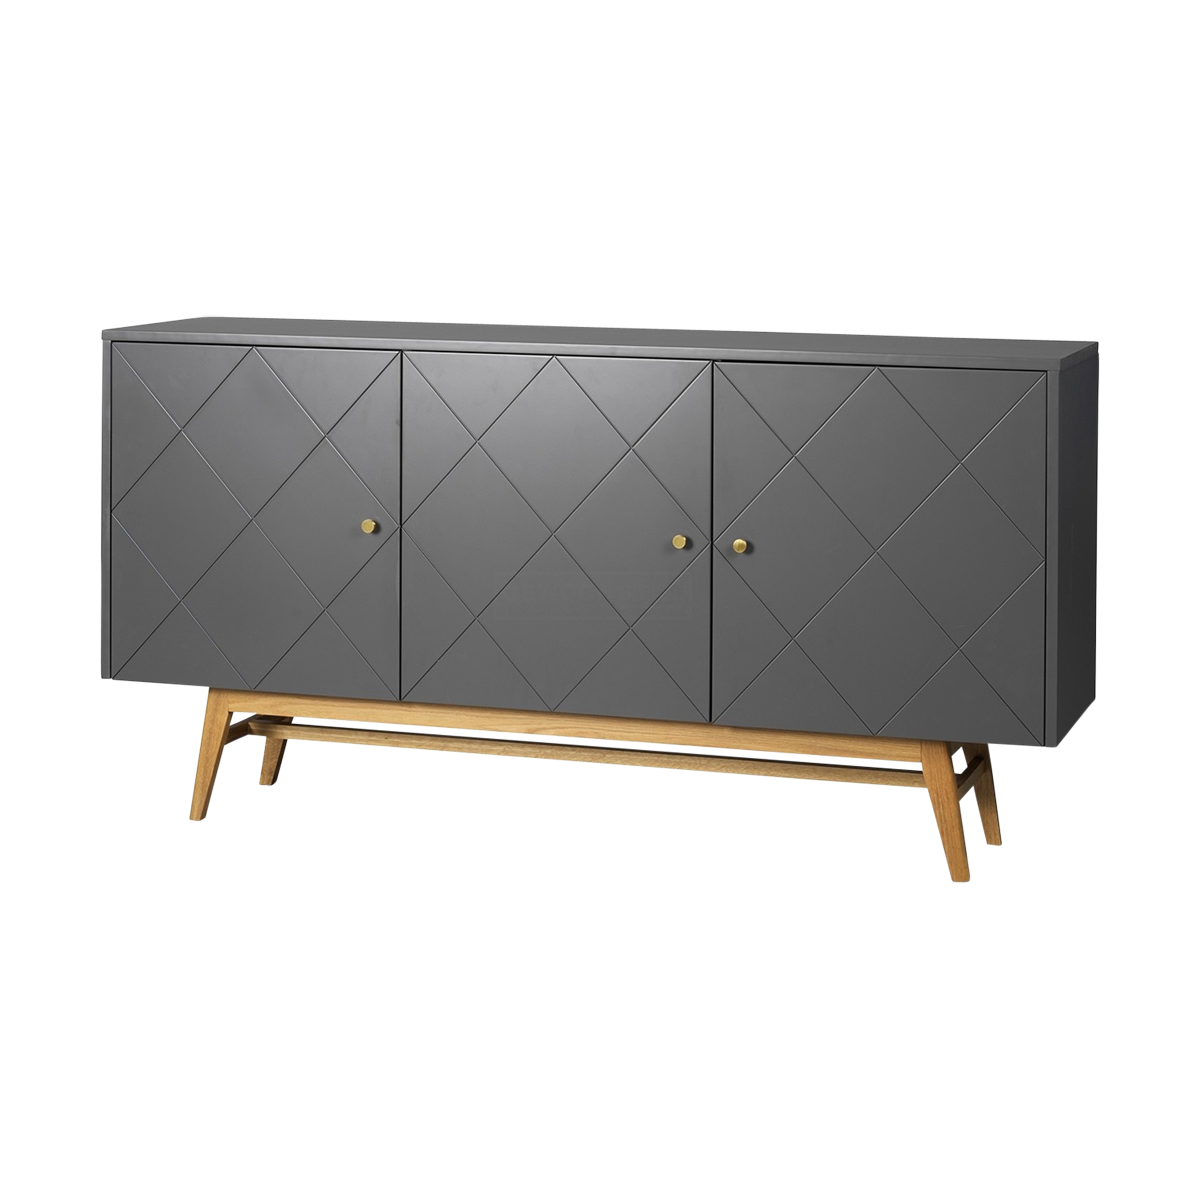 Rosswood houten sideboard donkergrijs - 169 x 87 cm